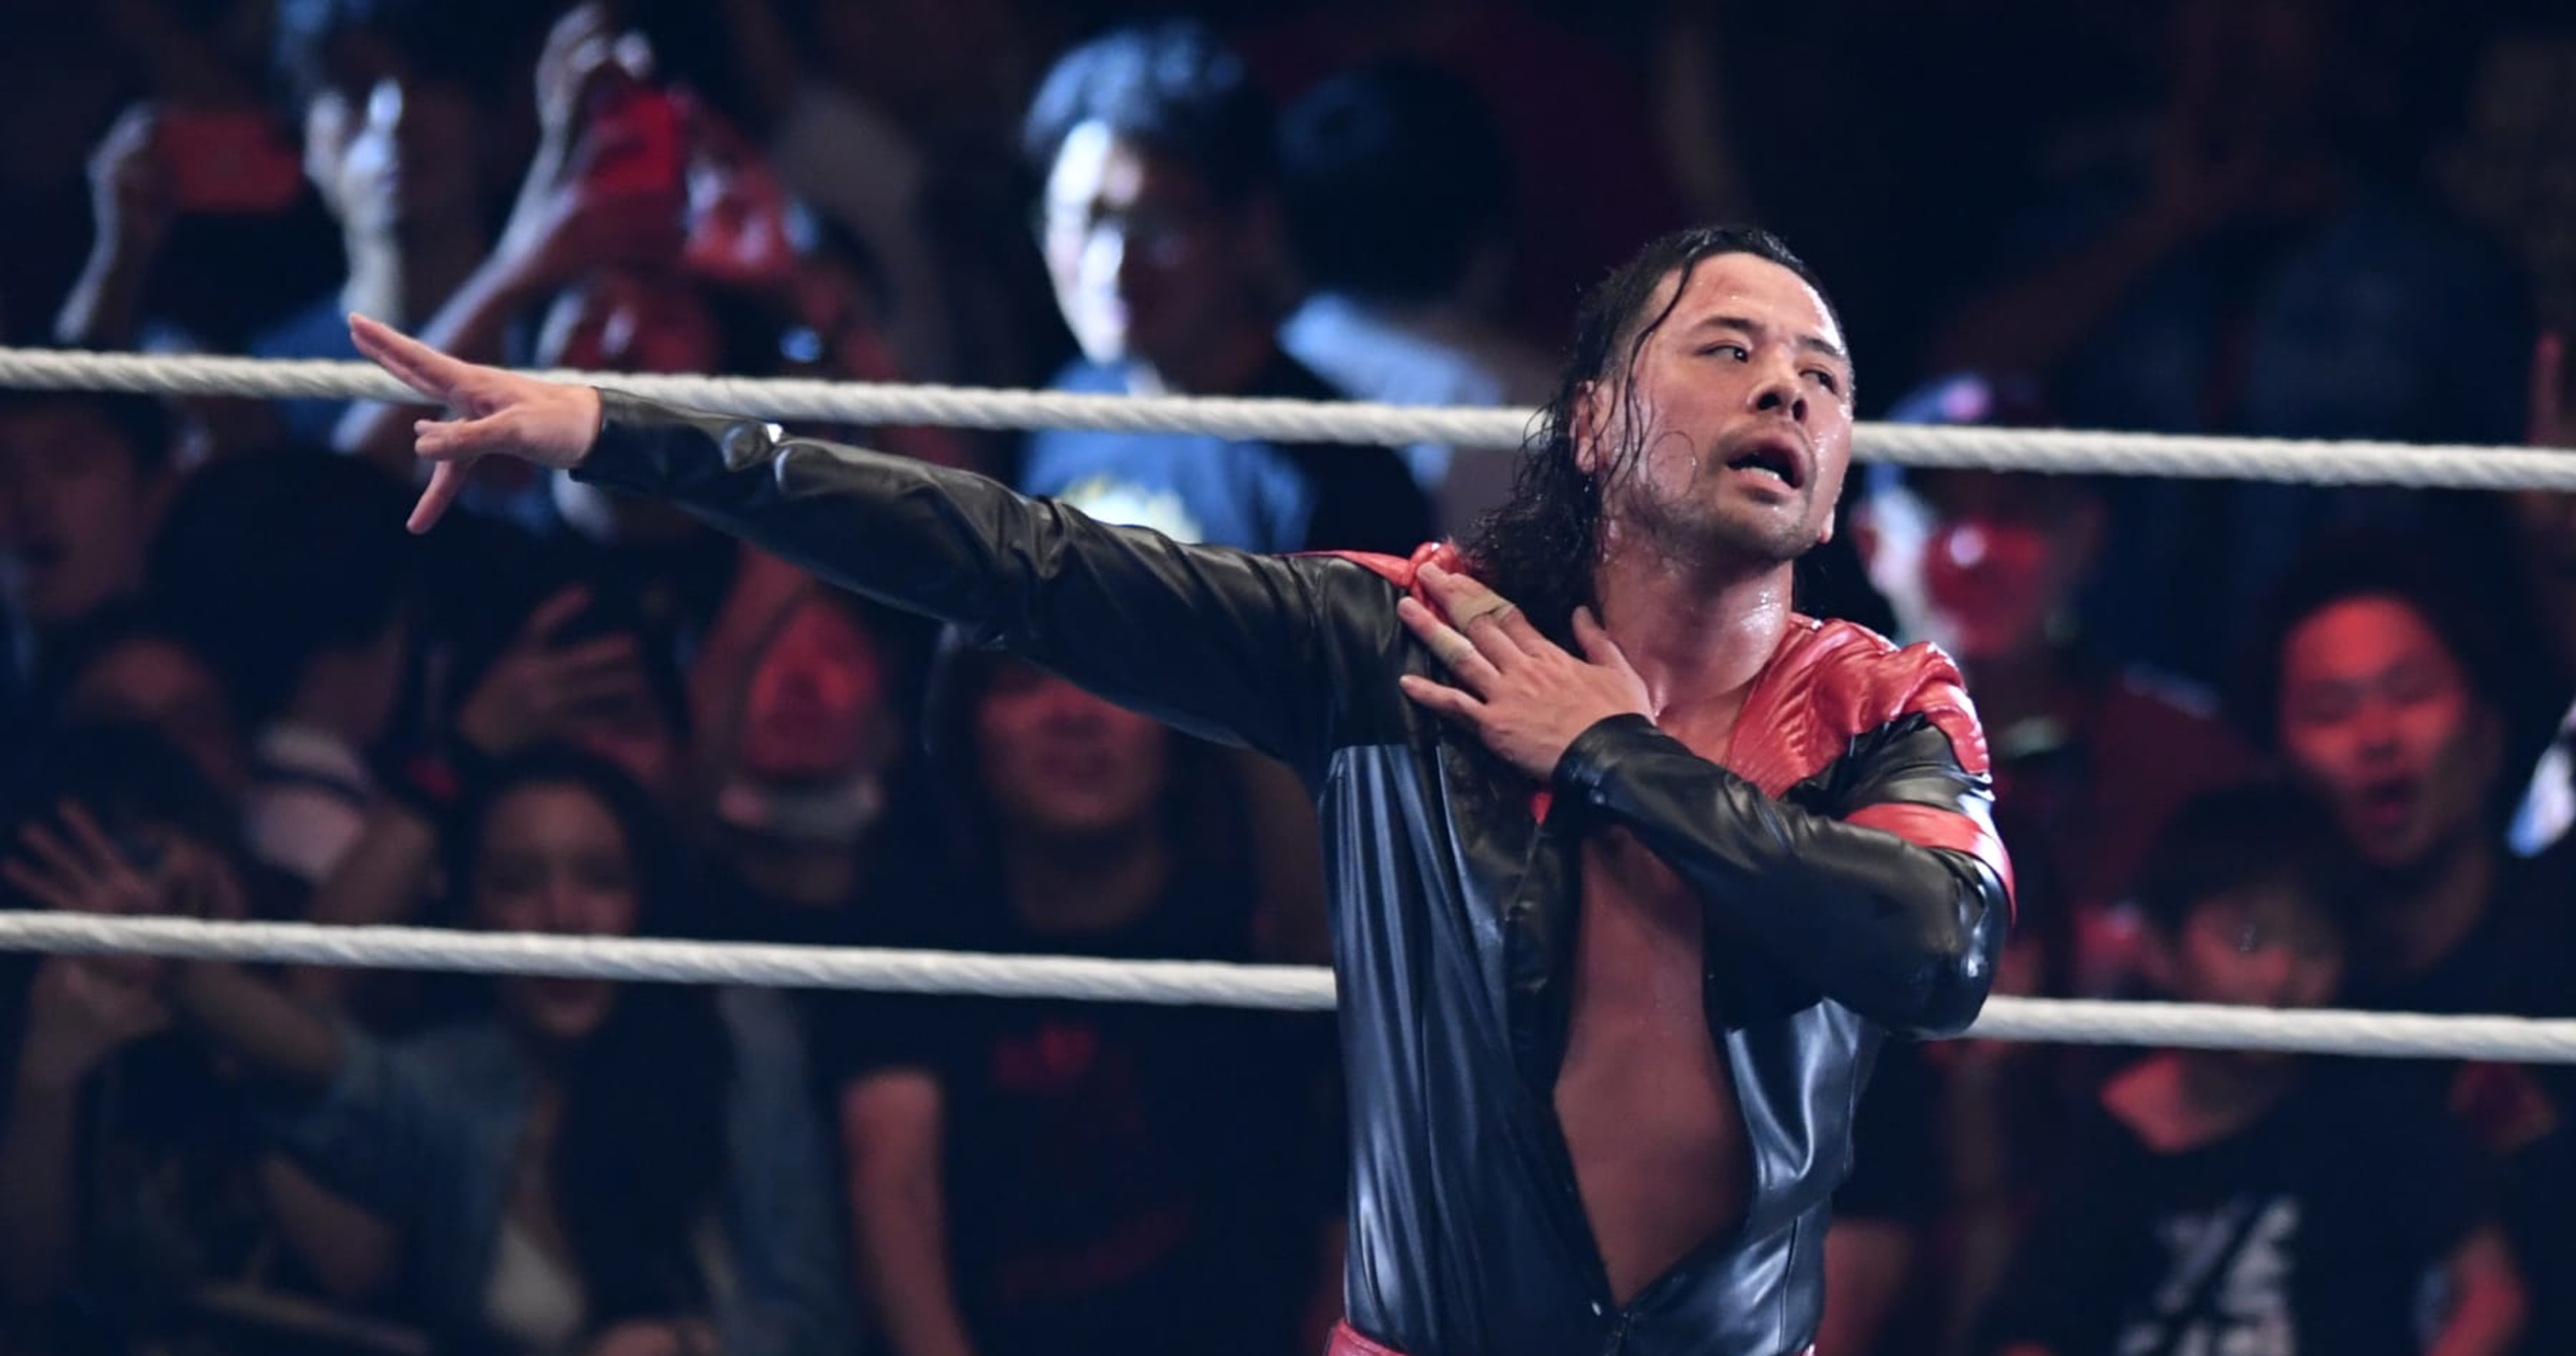 Shinsuke Nakamura WWE, News, Rumors, Pictures & Biography